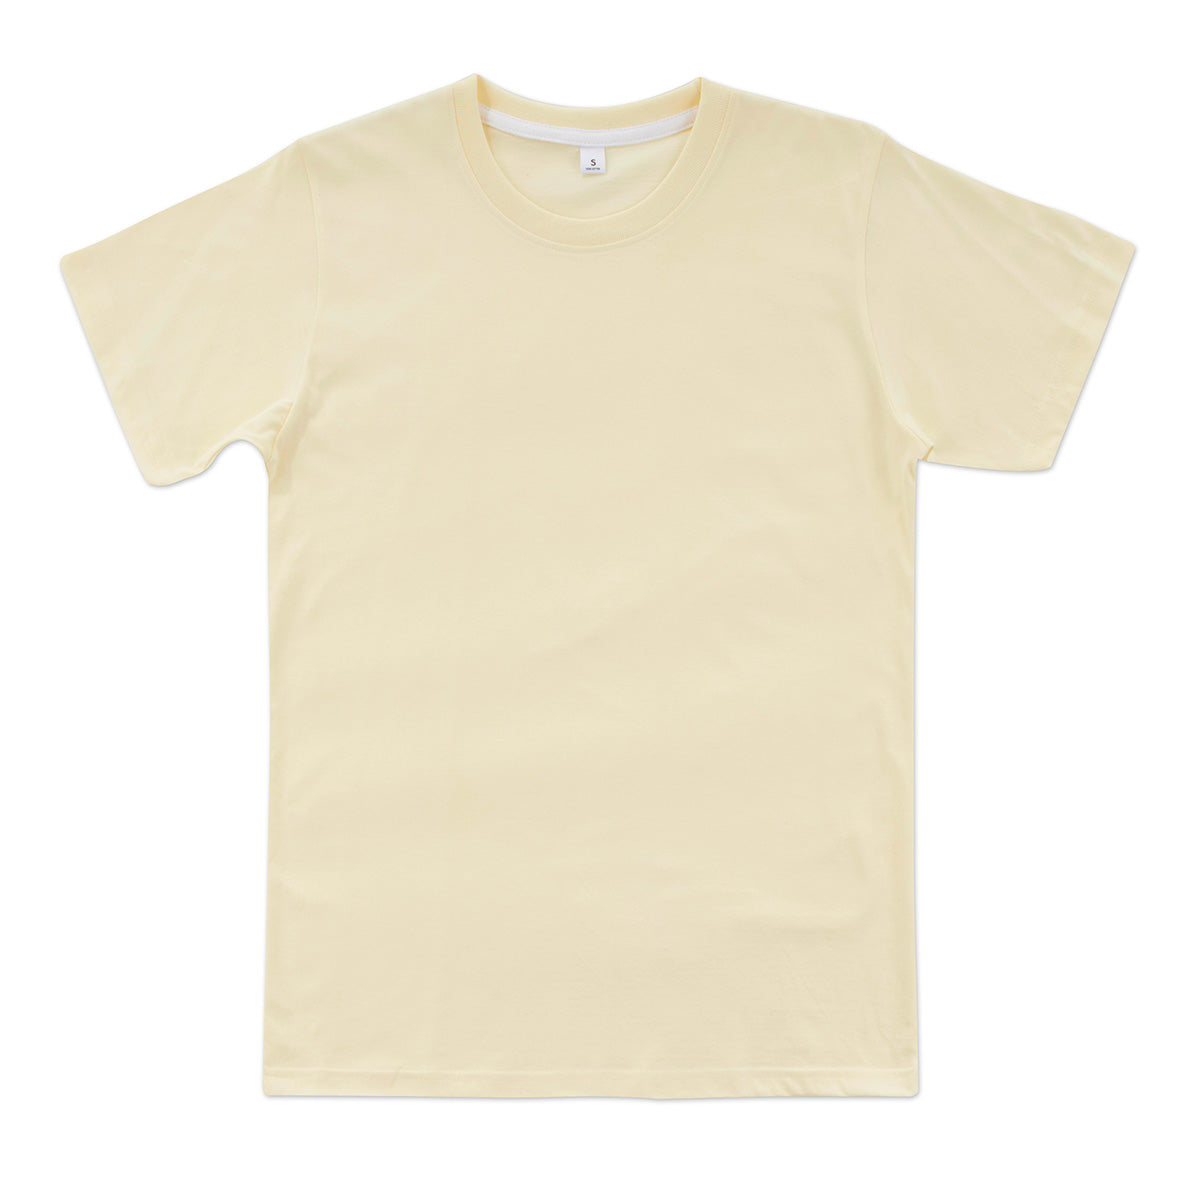 Kids Unisex Sublimation Shirts